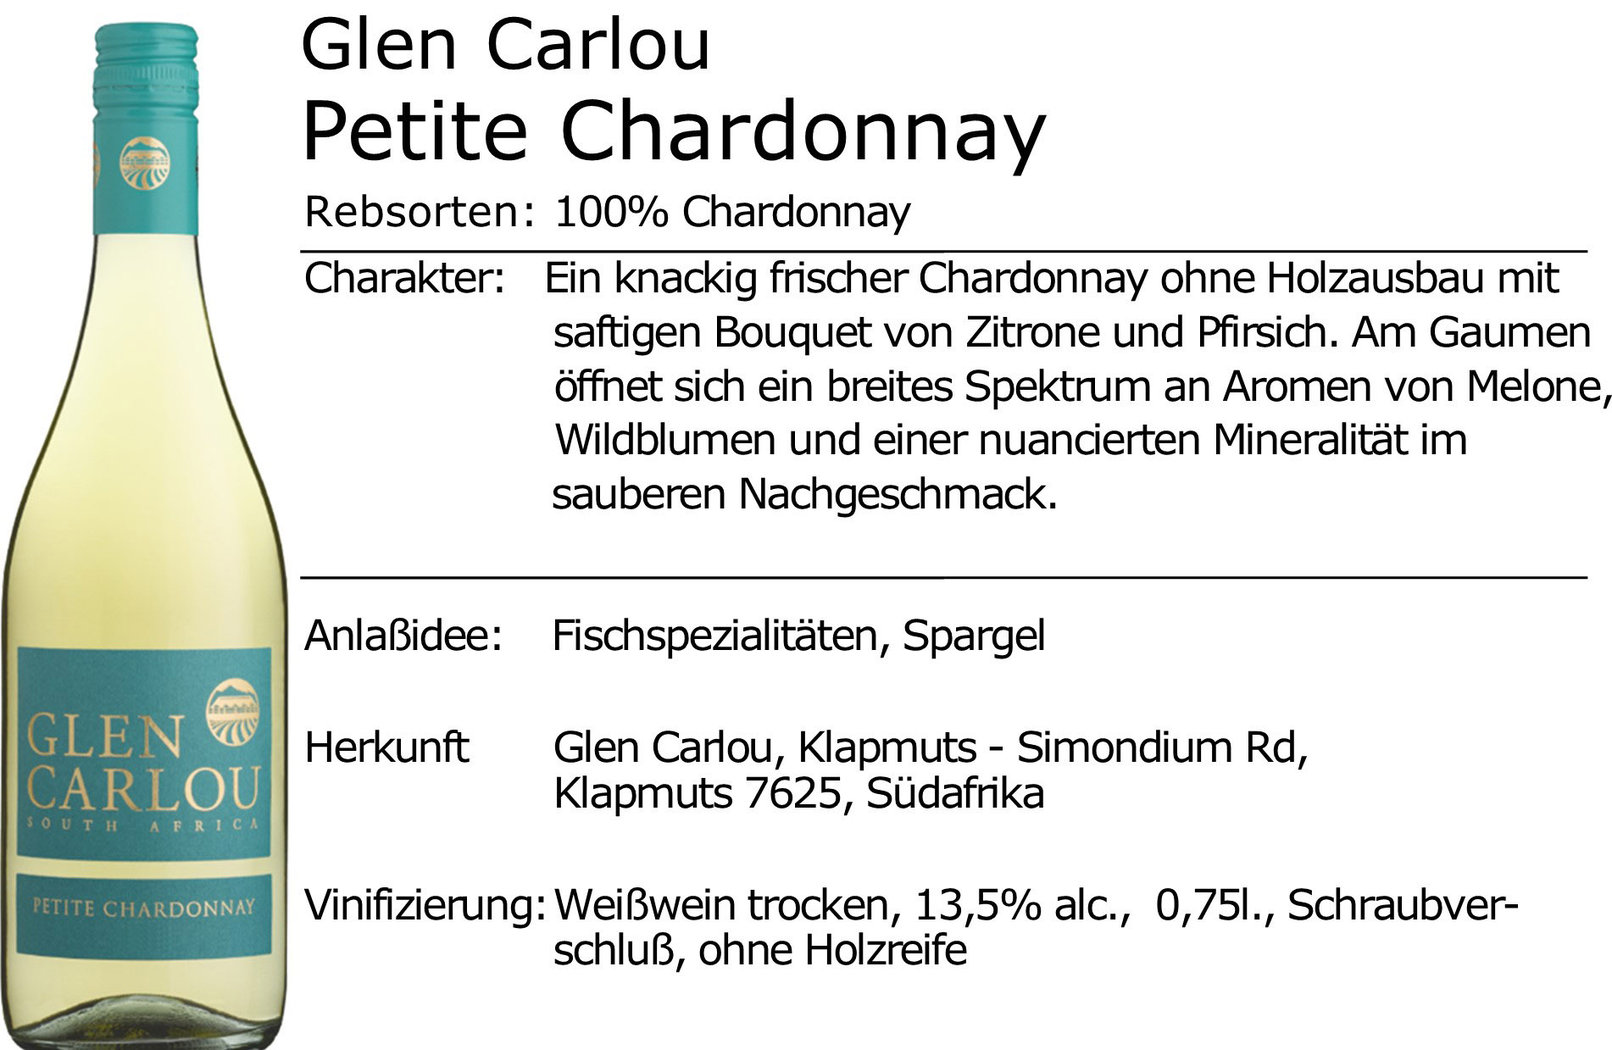 Glen Carlou Petite Chardonnay 2020